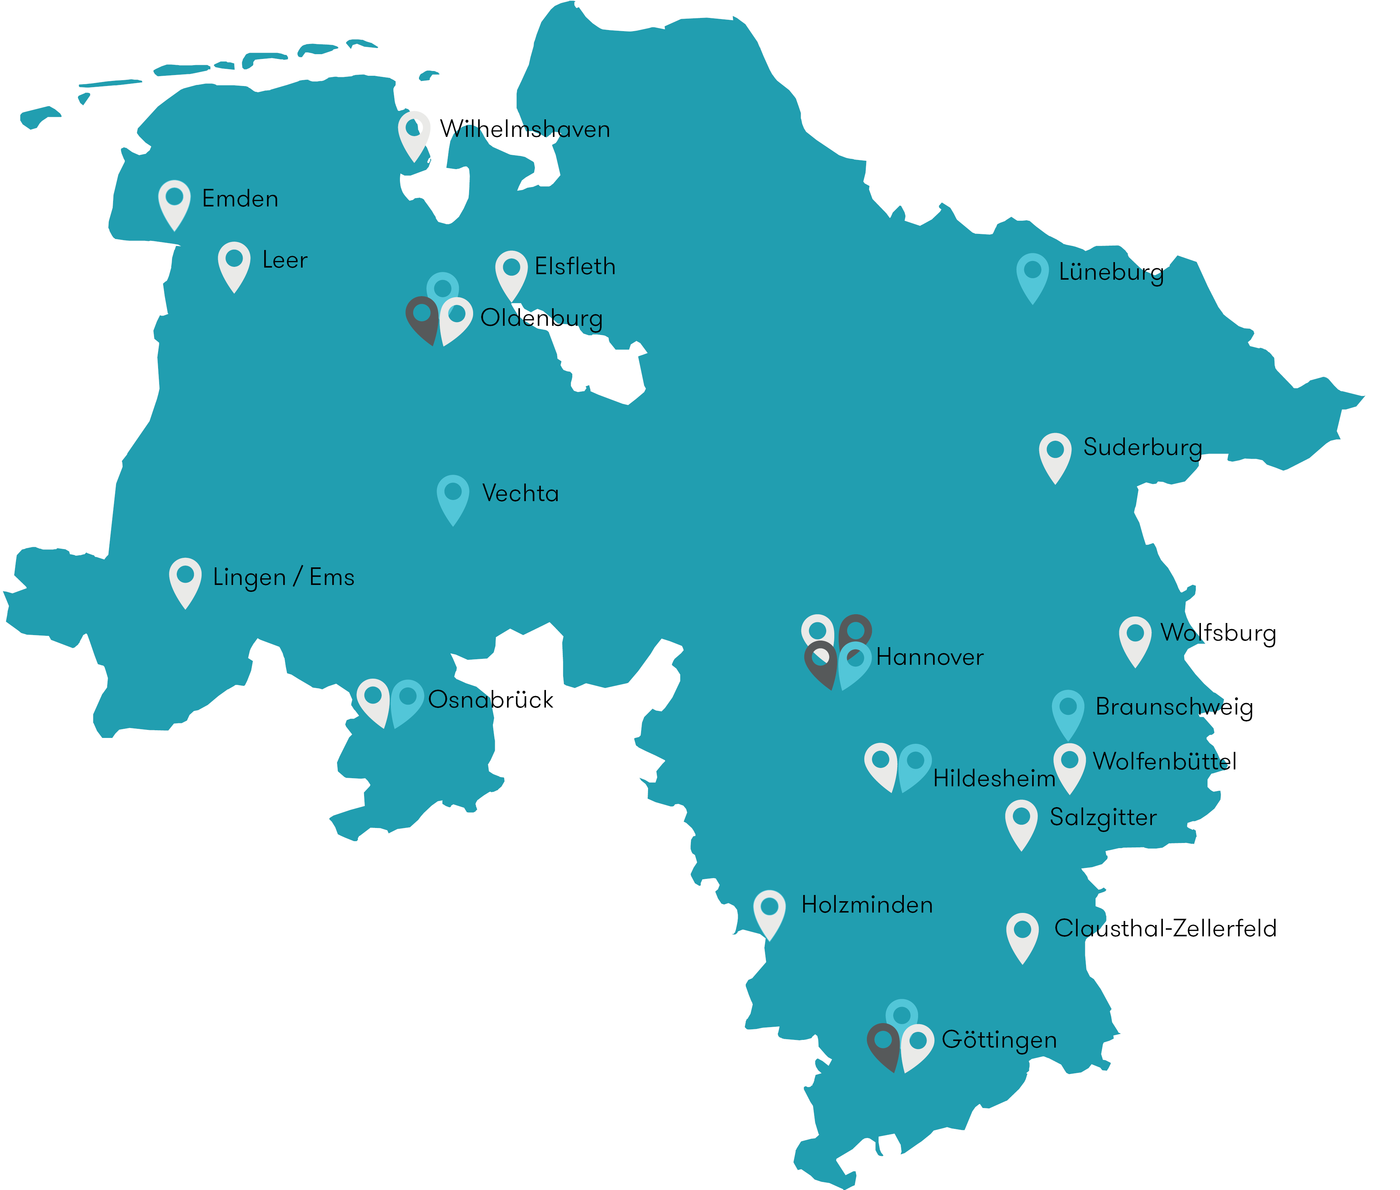 Grafik mit einer Landkarte von Niedersachsen, auf der mit farbigen Pins alle MINT-Hochschulen markiert sind